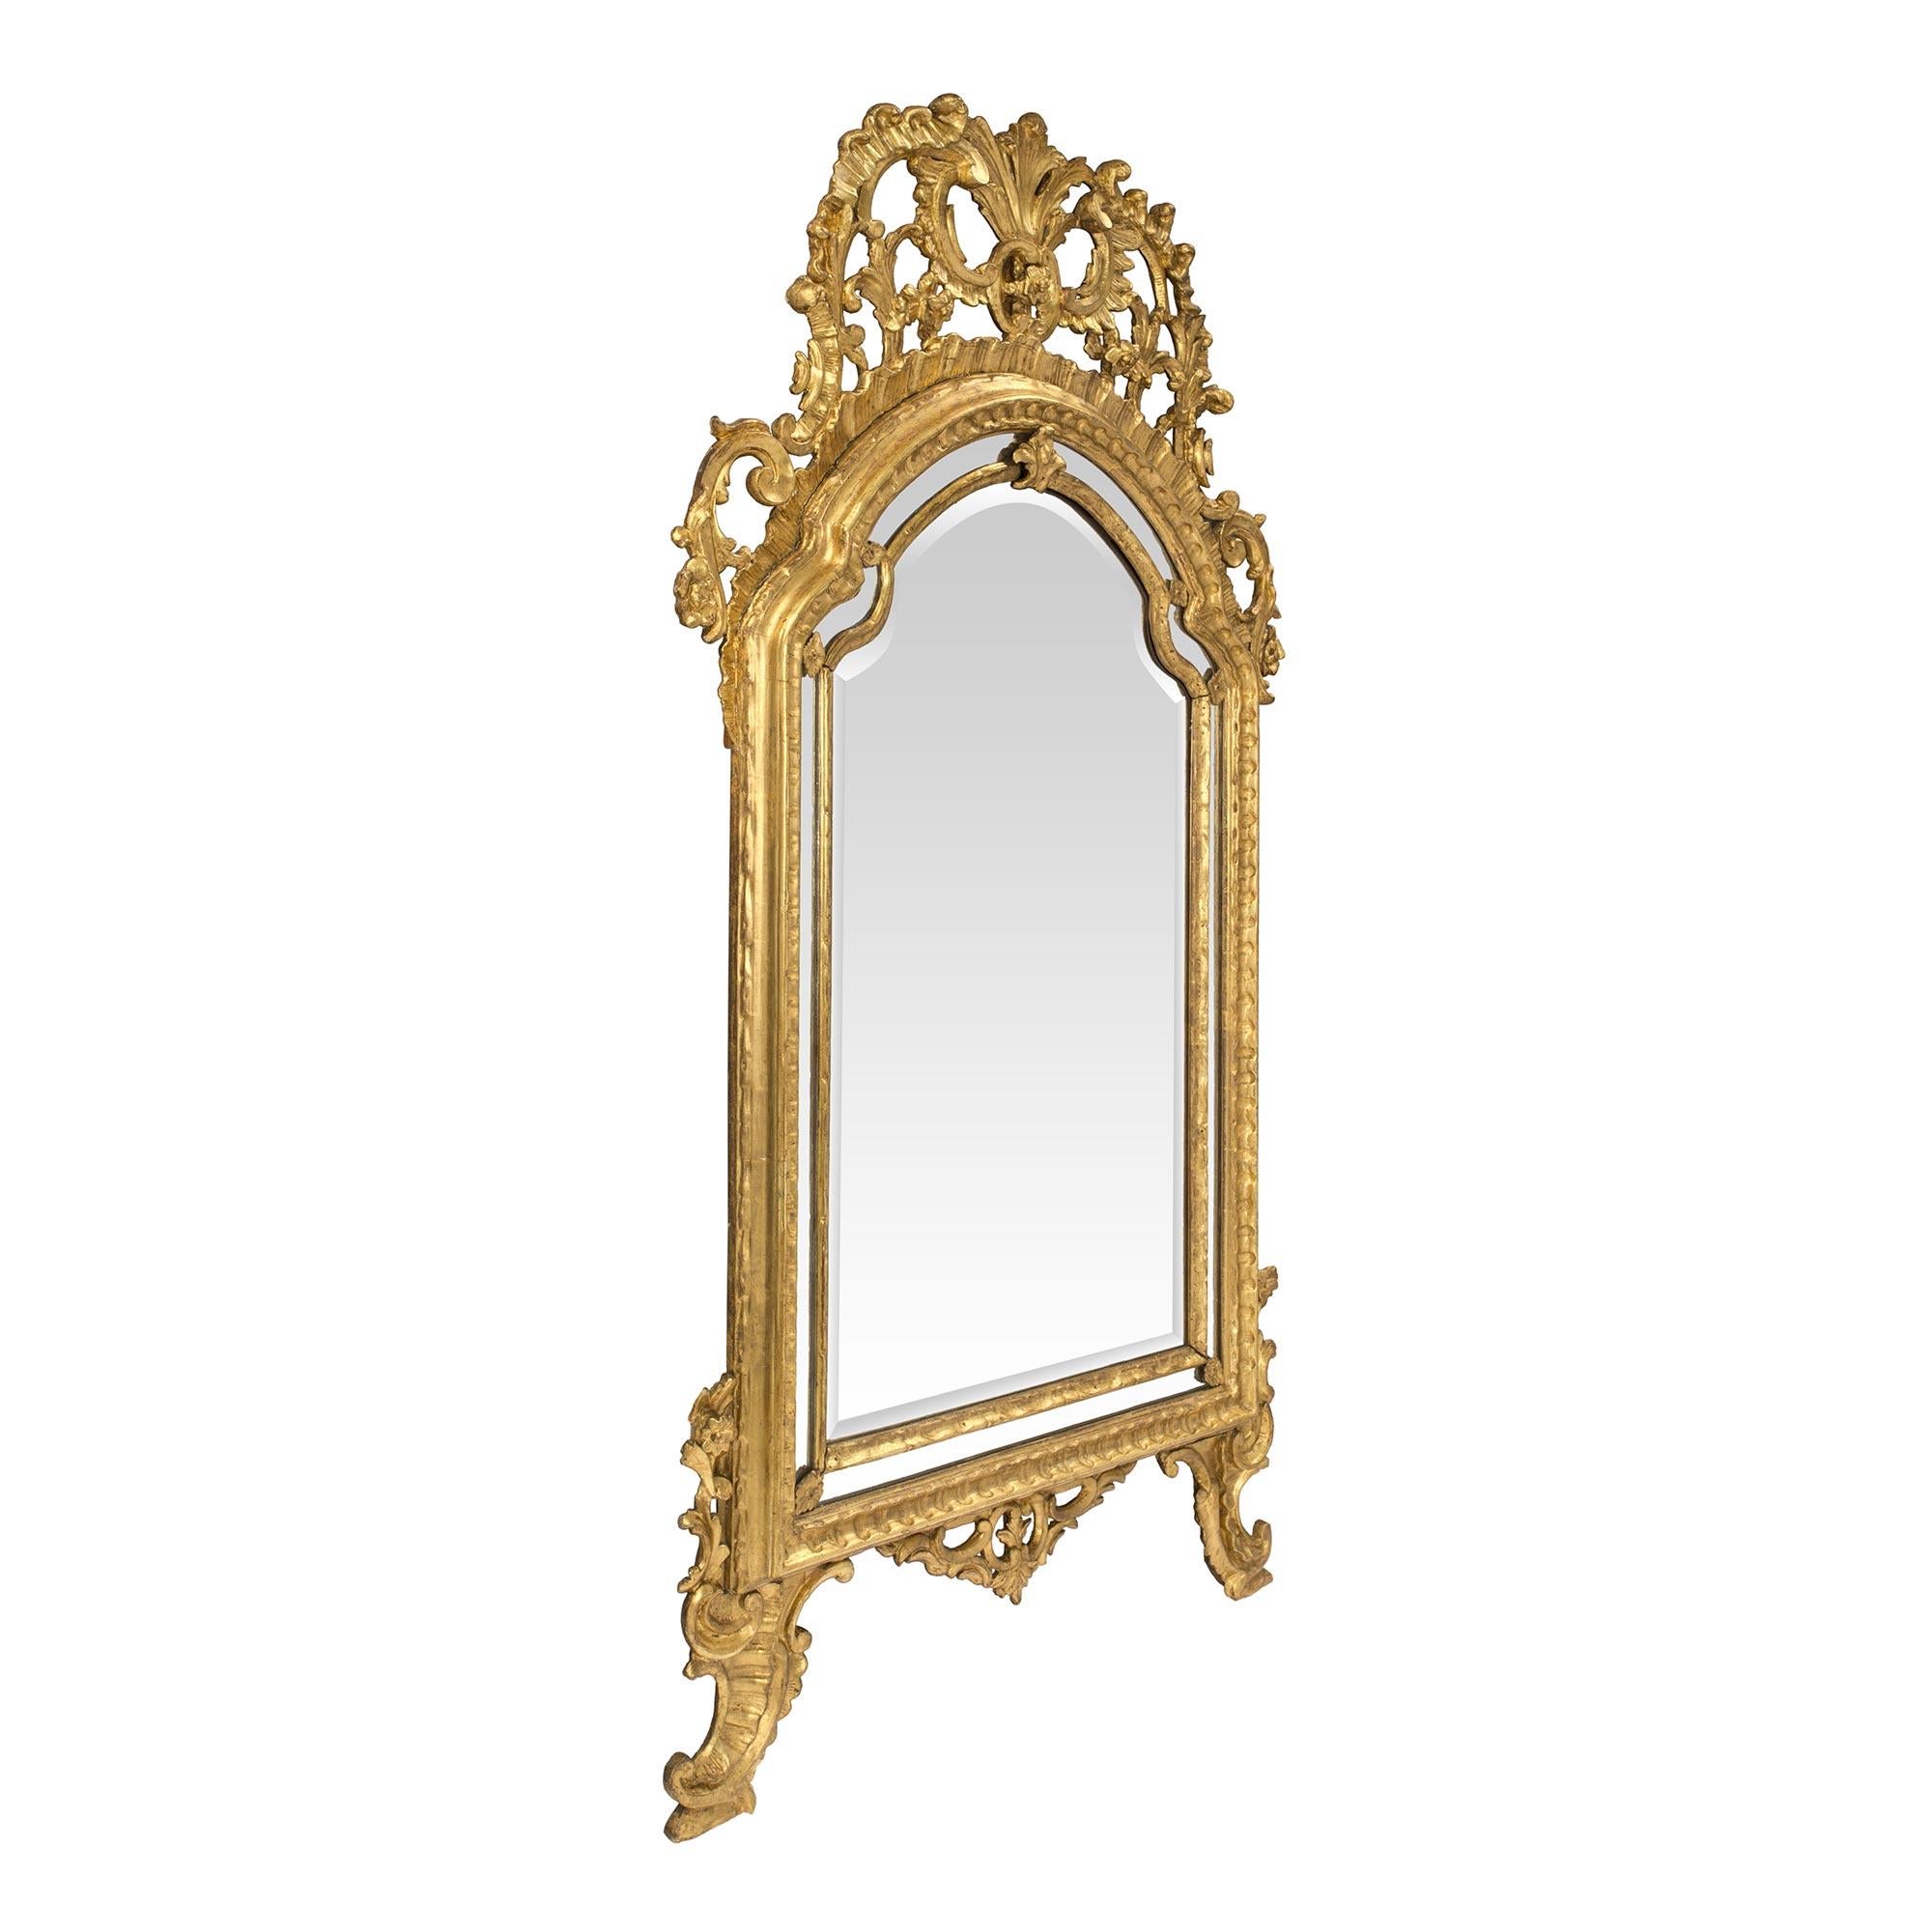 Eine erstaunliche und hochwertige italienische 18. Jahrhundert Louis XIV Zeitraum vergoldet Spiegel aus der Region Piemont, Turino gerahmt. Der elegante Spiegel steht auf S-förmig geschwungenen Beinen mit vergoldeten Akanthusblättern und einer